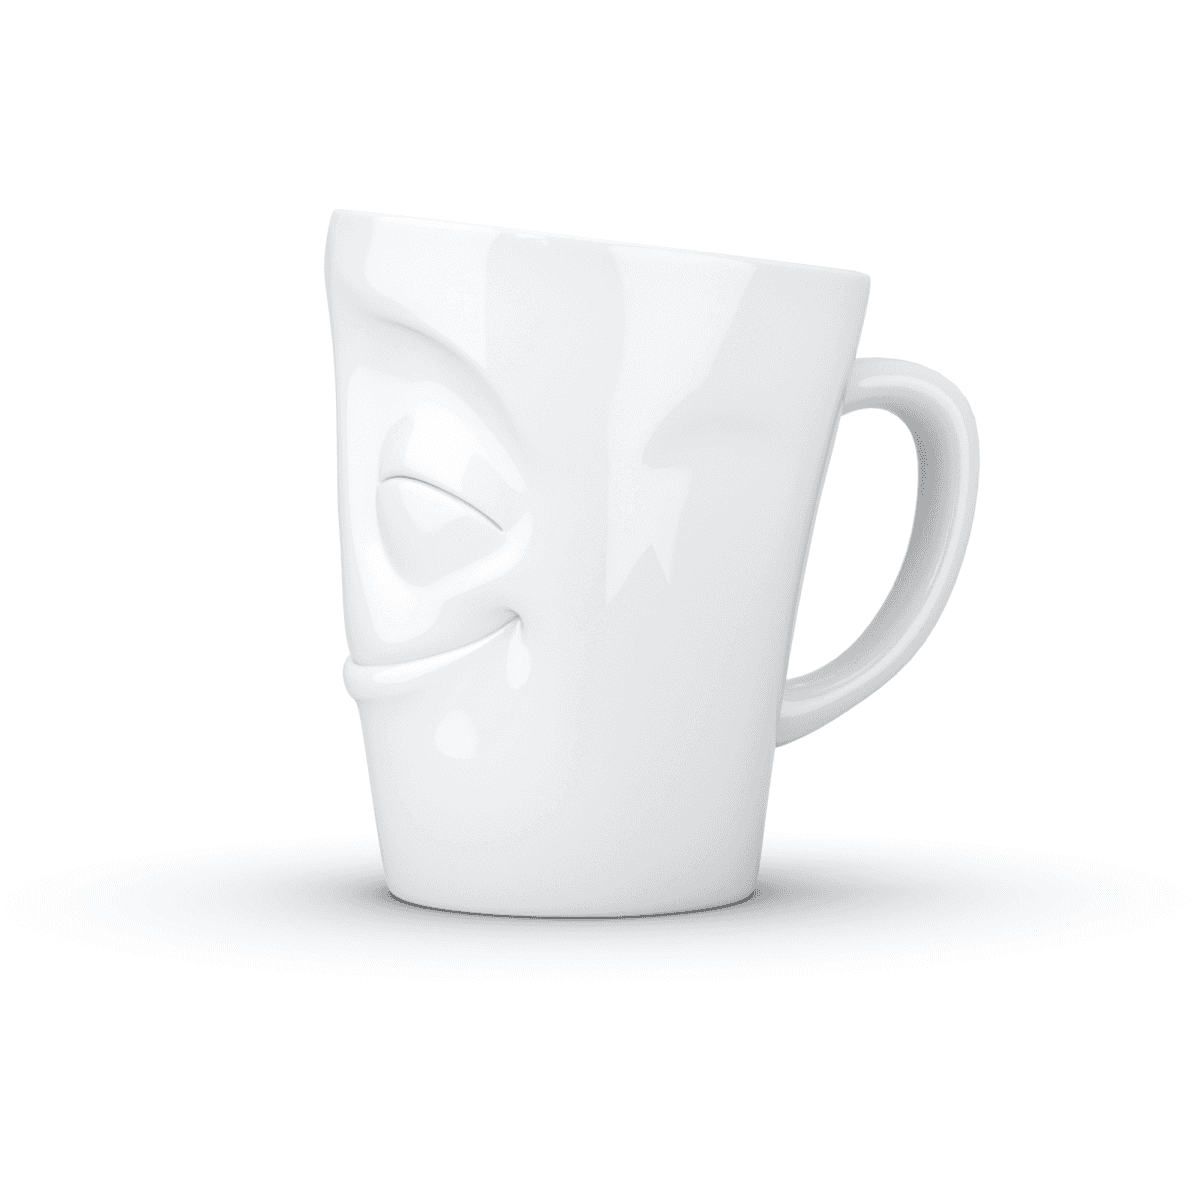 Immagine del prodotto Mug Allegro 3D in Porcellana 350 ml con Manico | TASSEN By Fiftyeight Products